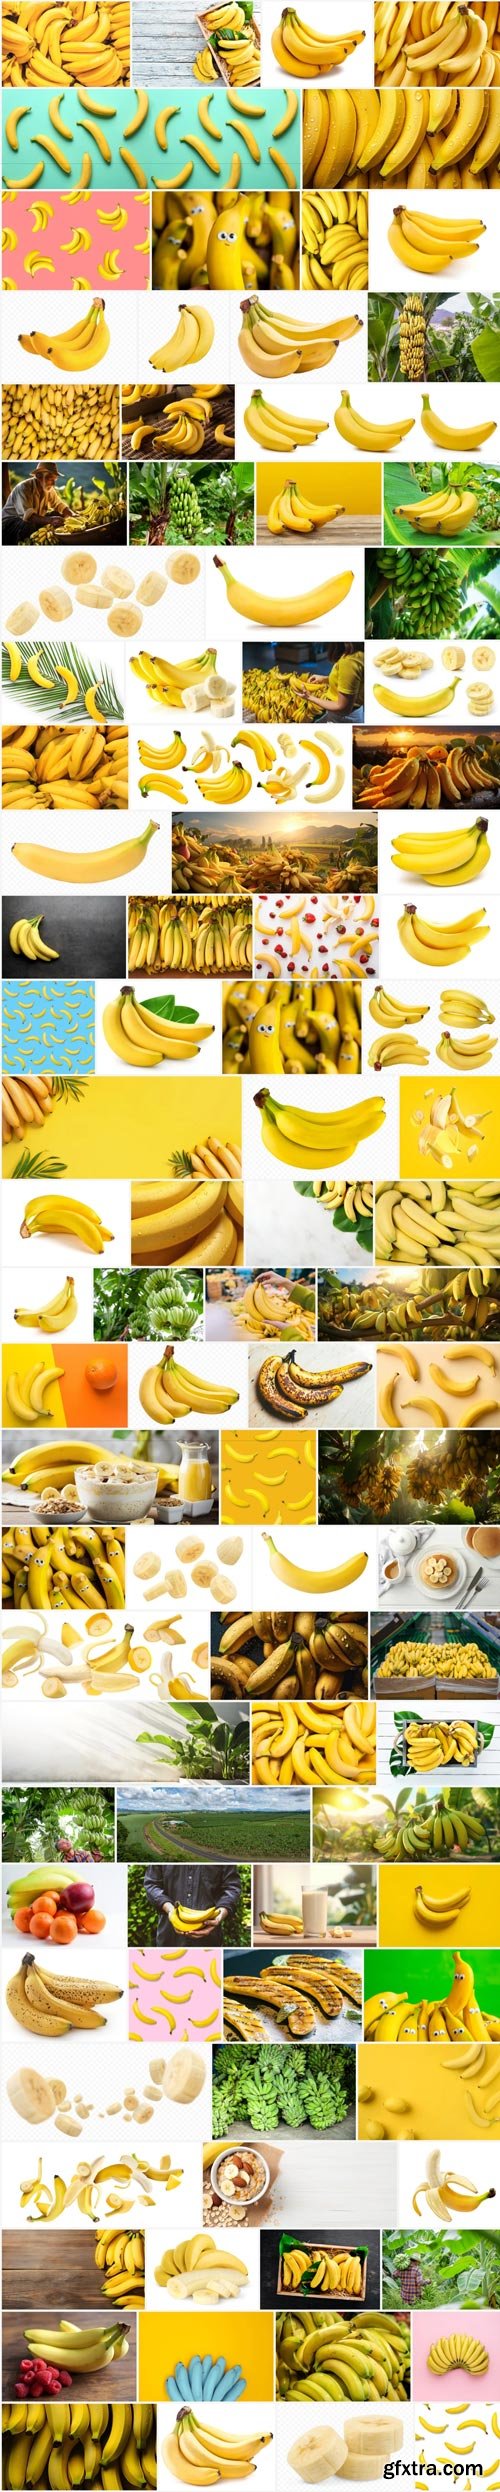 Amazing Photos, Bananas 100xJPEG